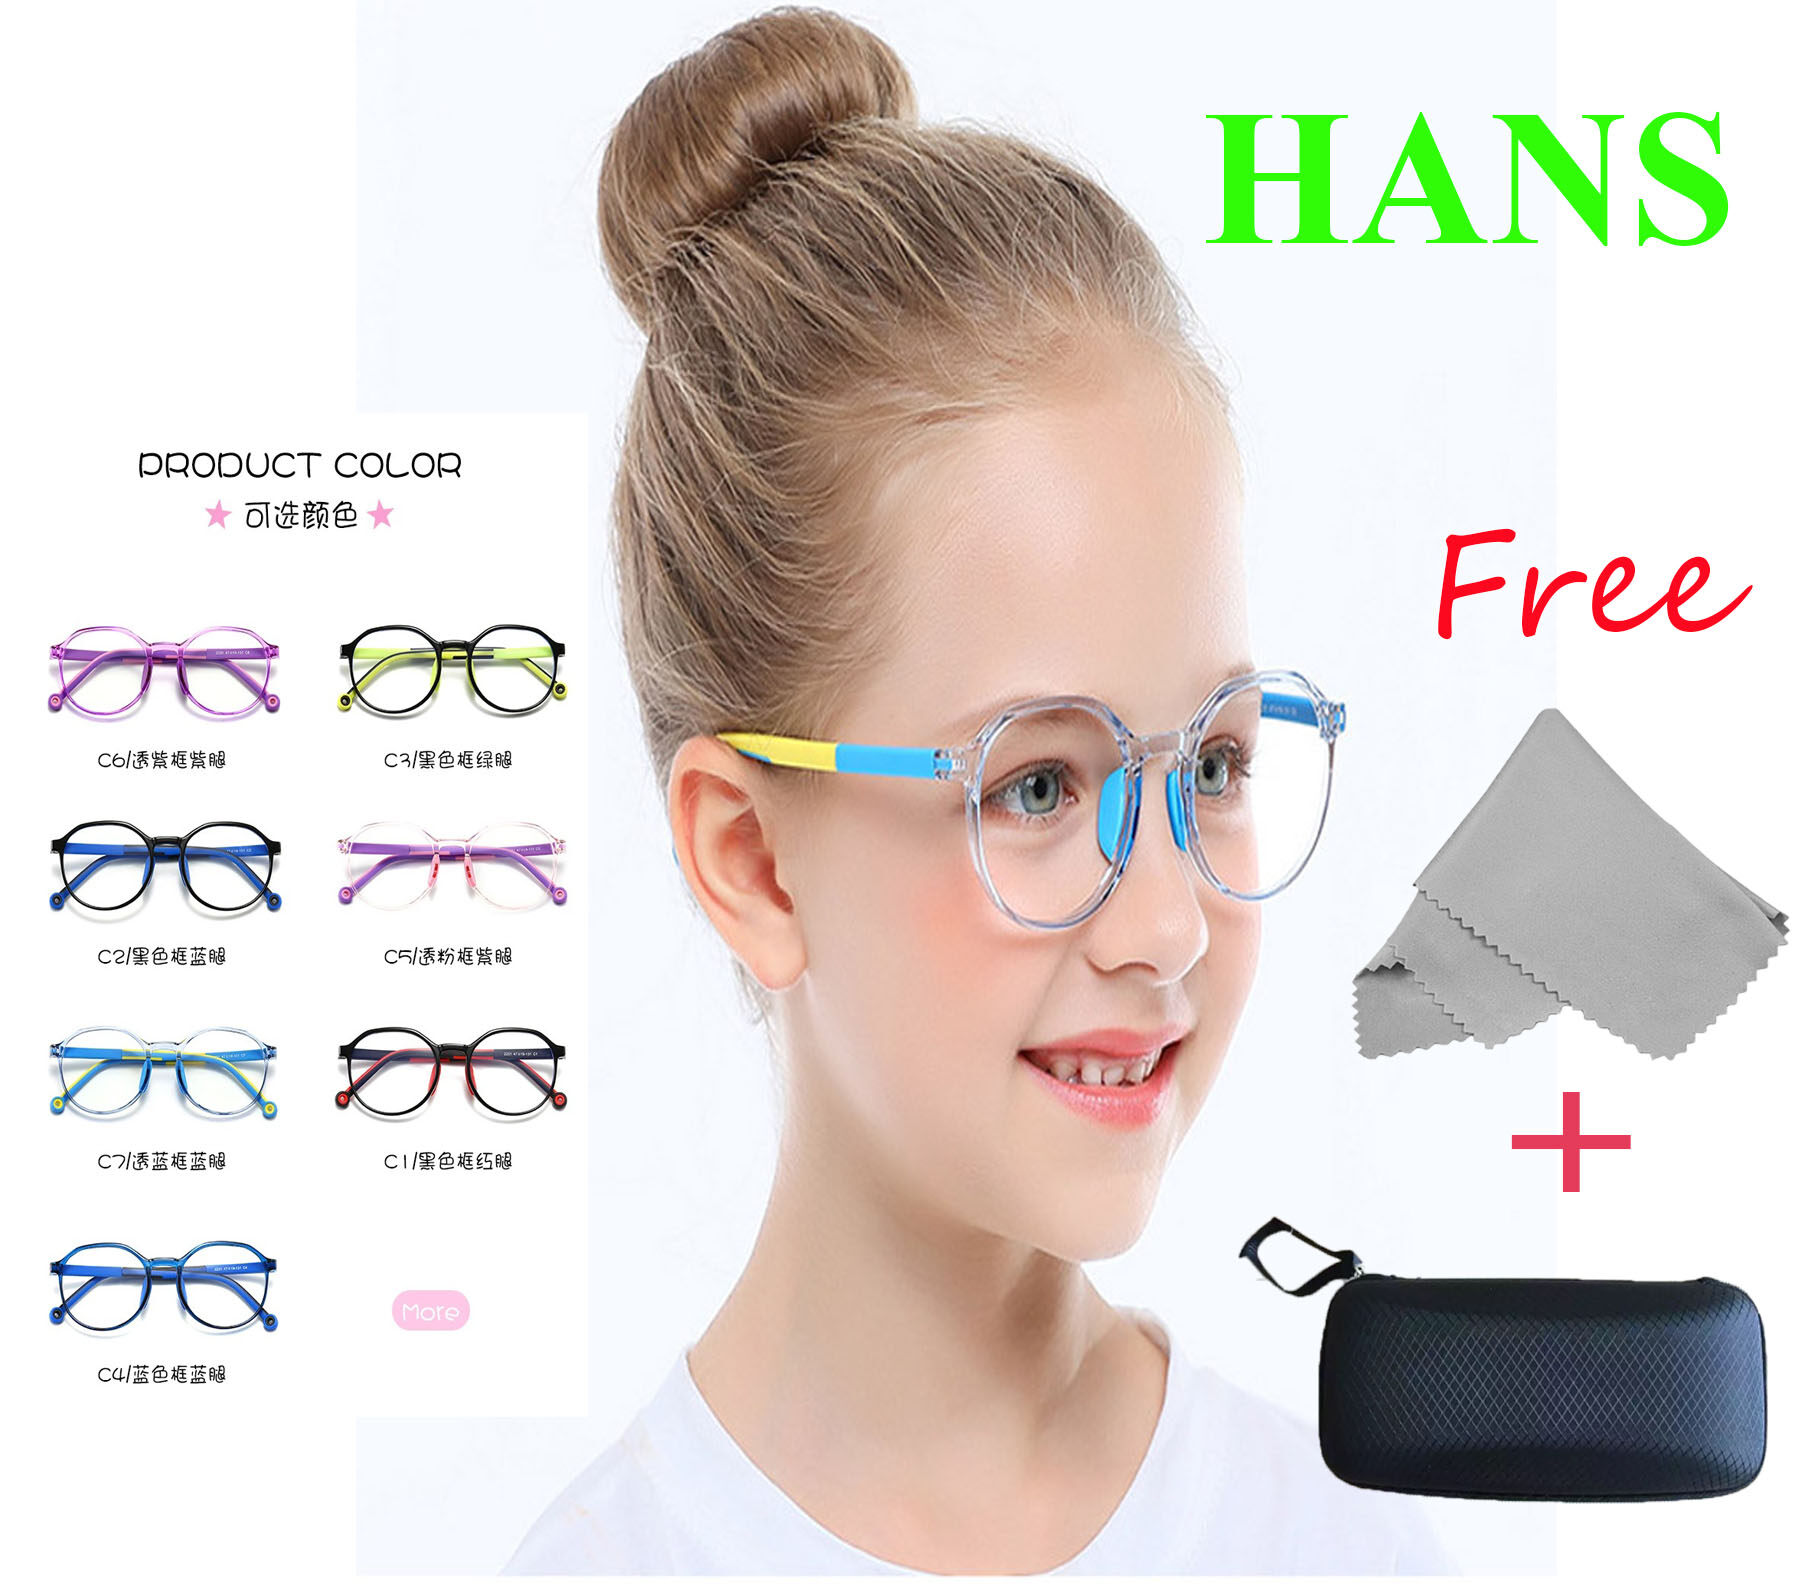 แว่นตากรองแสงคอมและมือถือ สำหรับเด็ก Kid glasses with Anti-Blue ray Lens รุ่นใหม่ พร้อมผ้าเช็ดแว่น และกล่องแว่นกันกระแทกอย่างดี